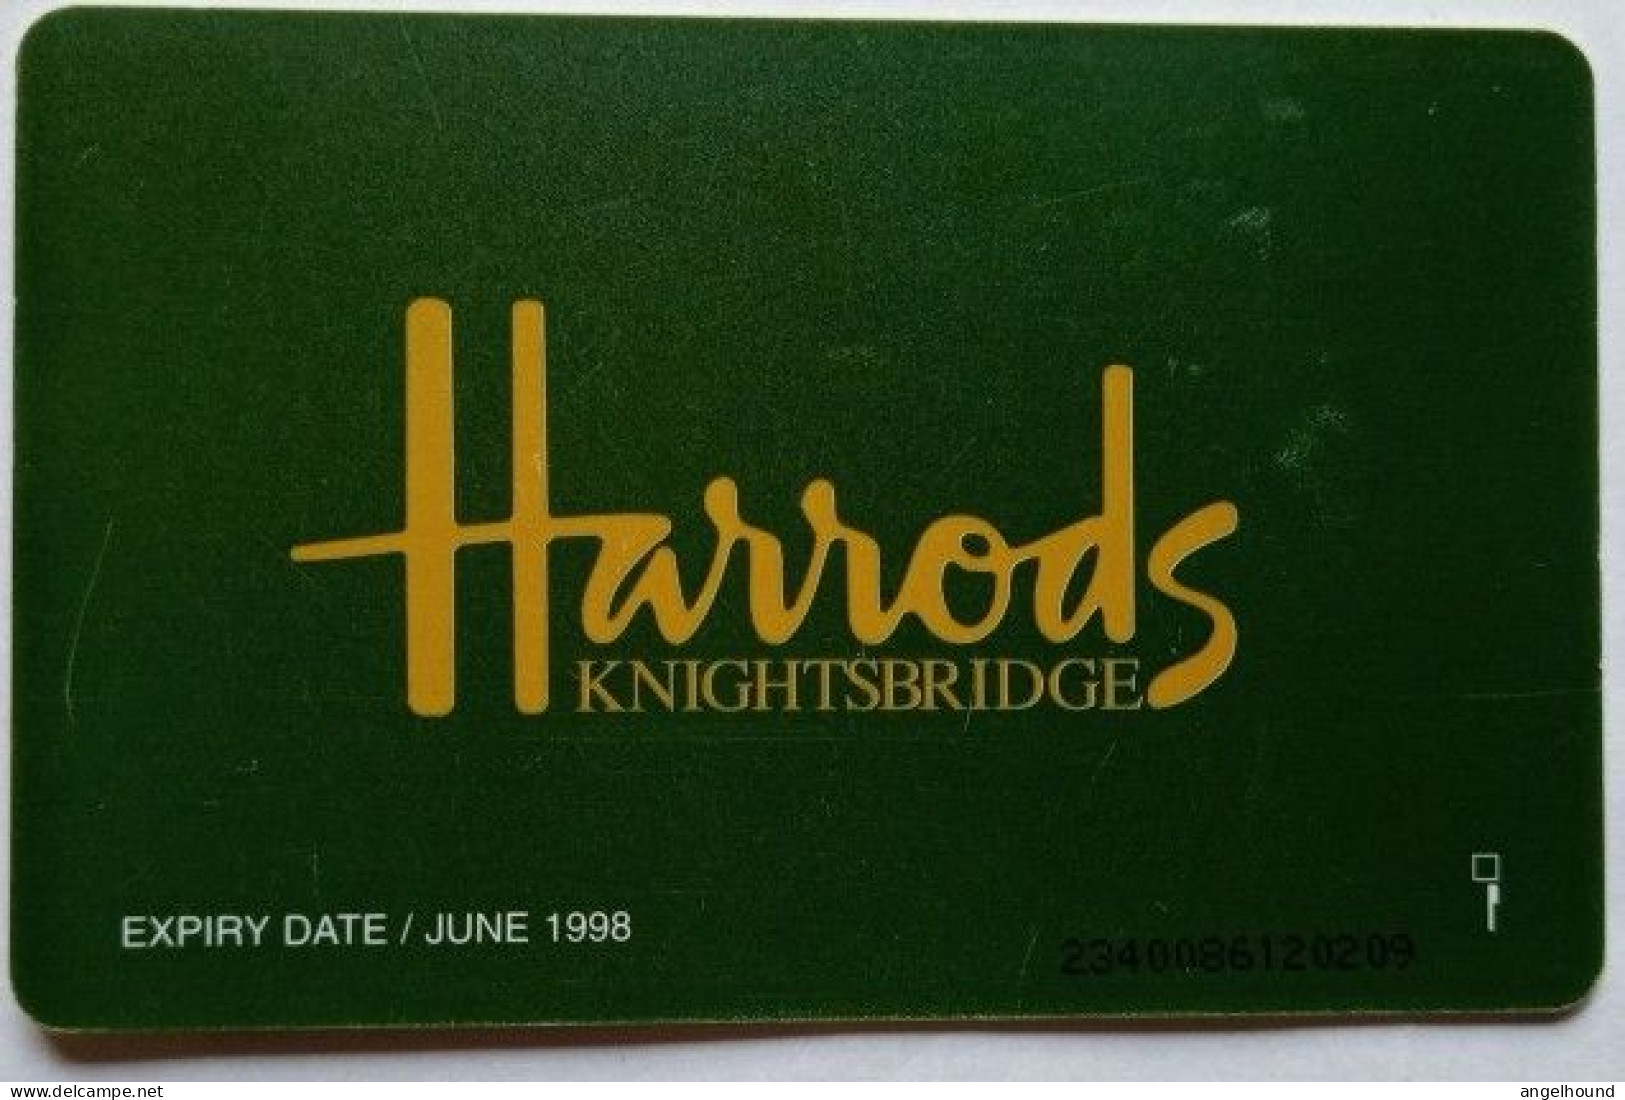 UK BT £2 Chip Card - Harrods - BT Promociónales